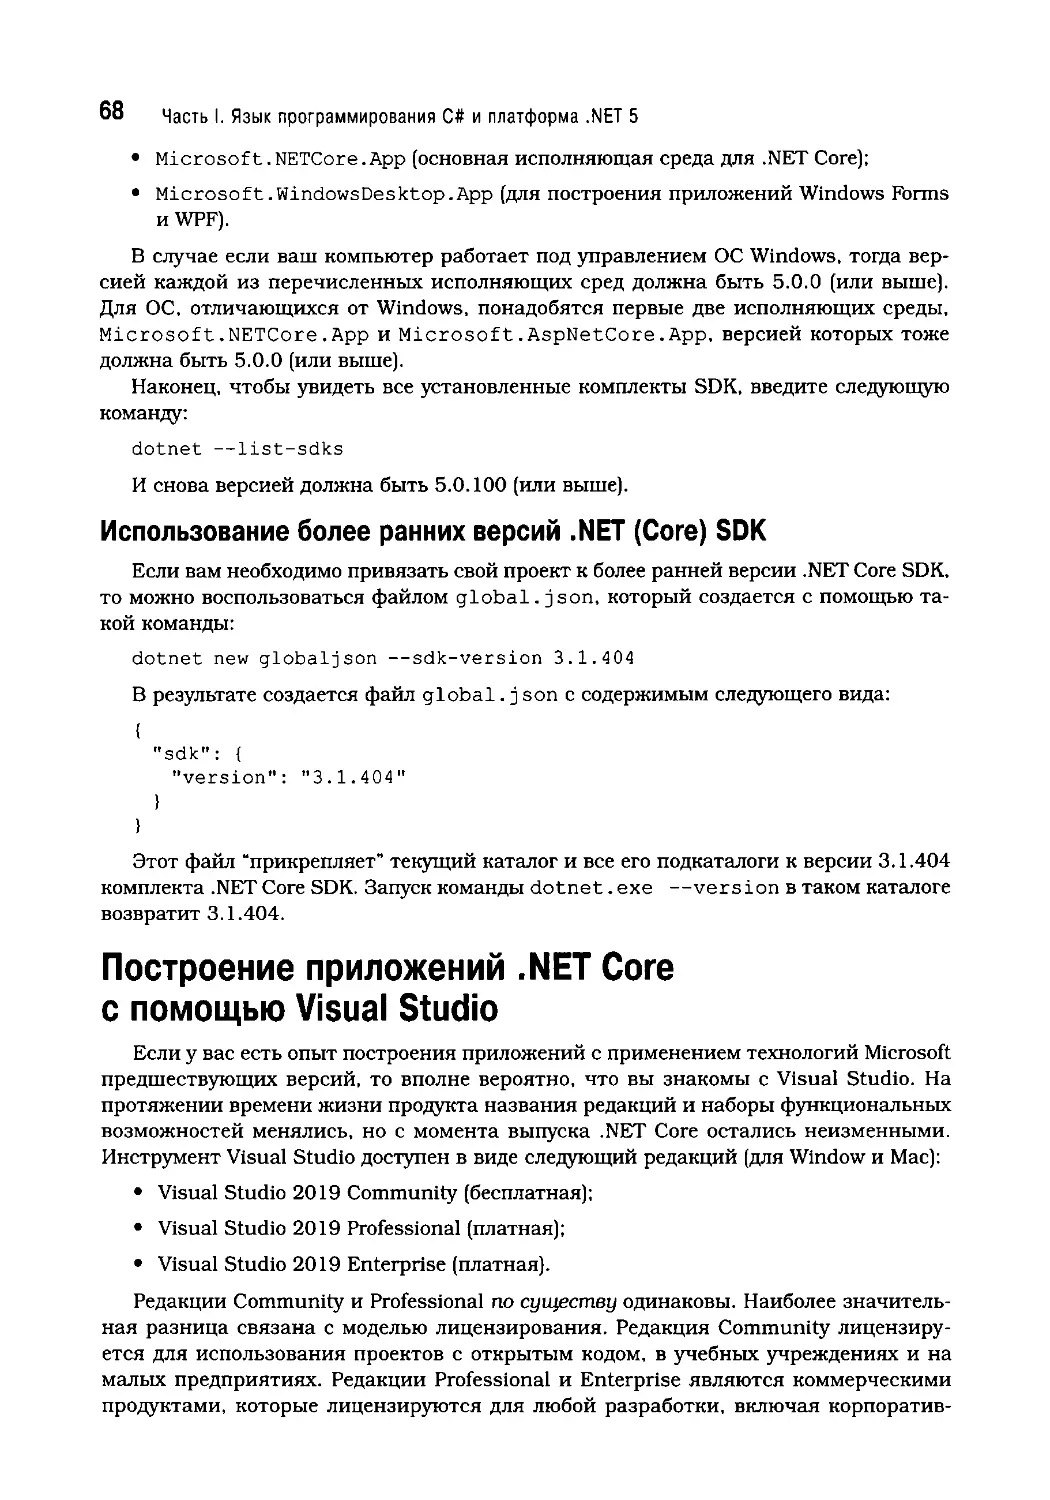 Построение приложений .NET Core с помощью Visual Studio